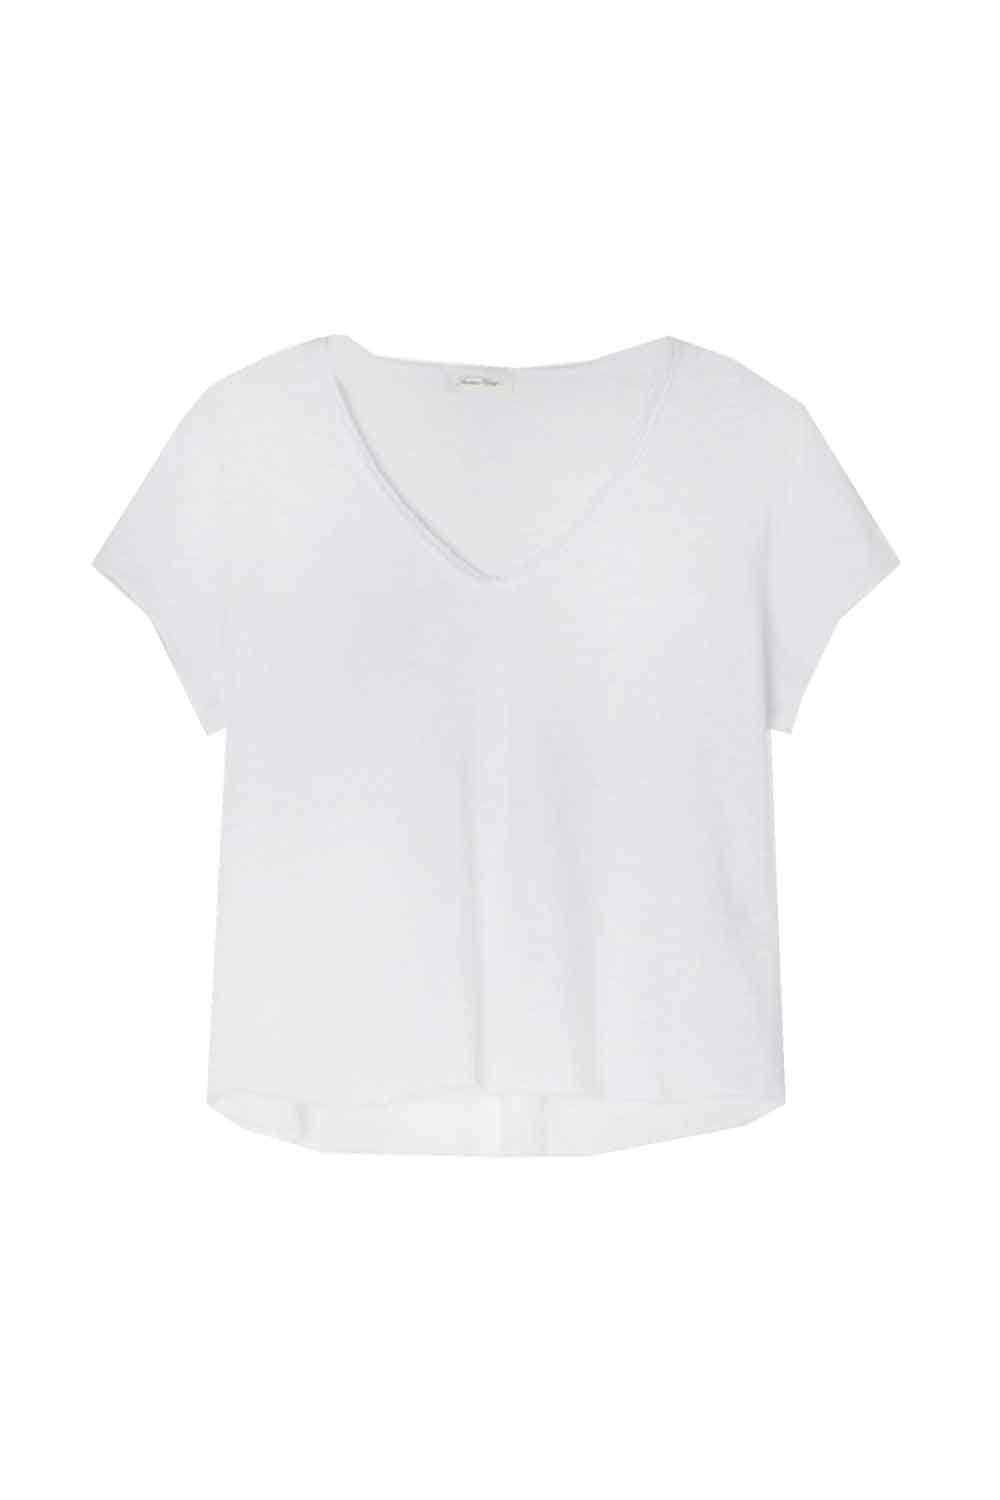 Sonoma T-shirt- White